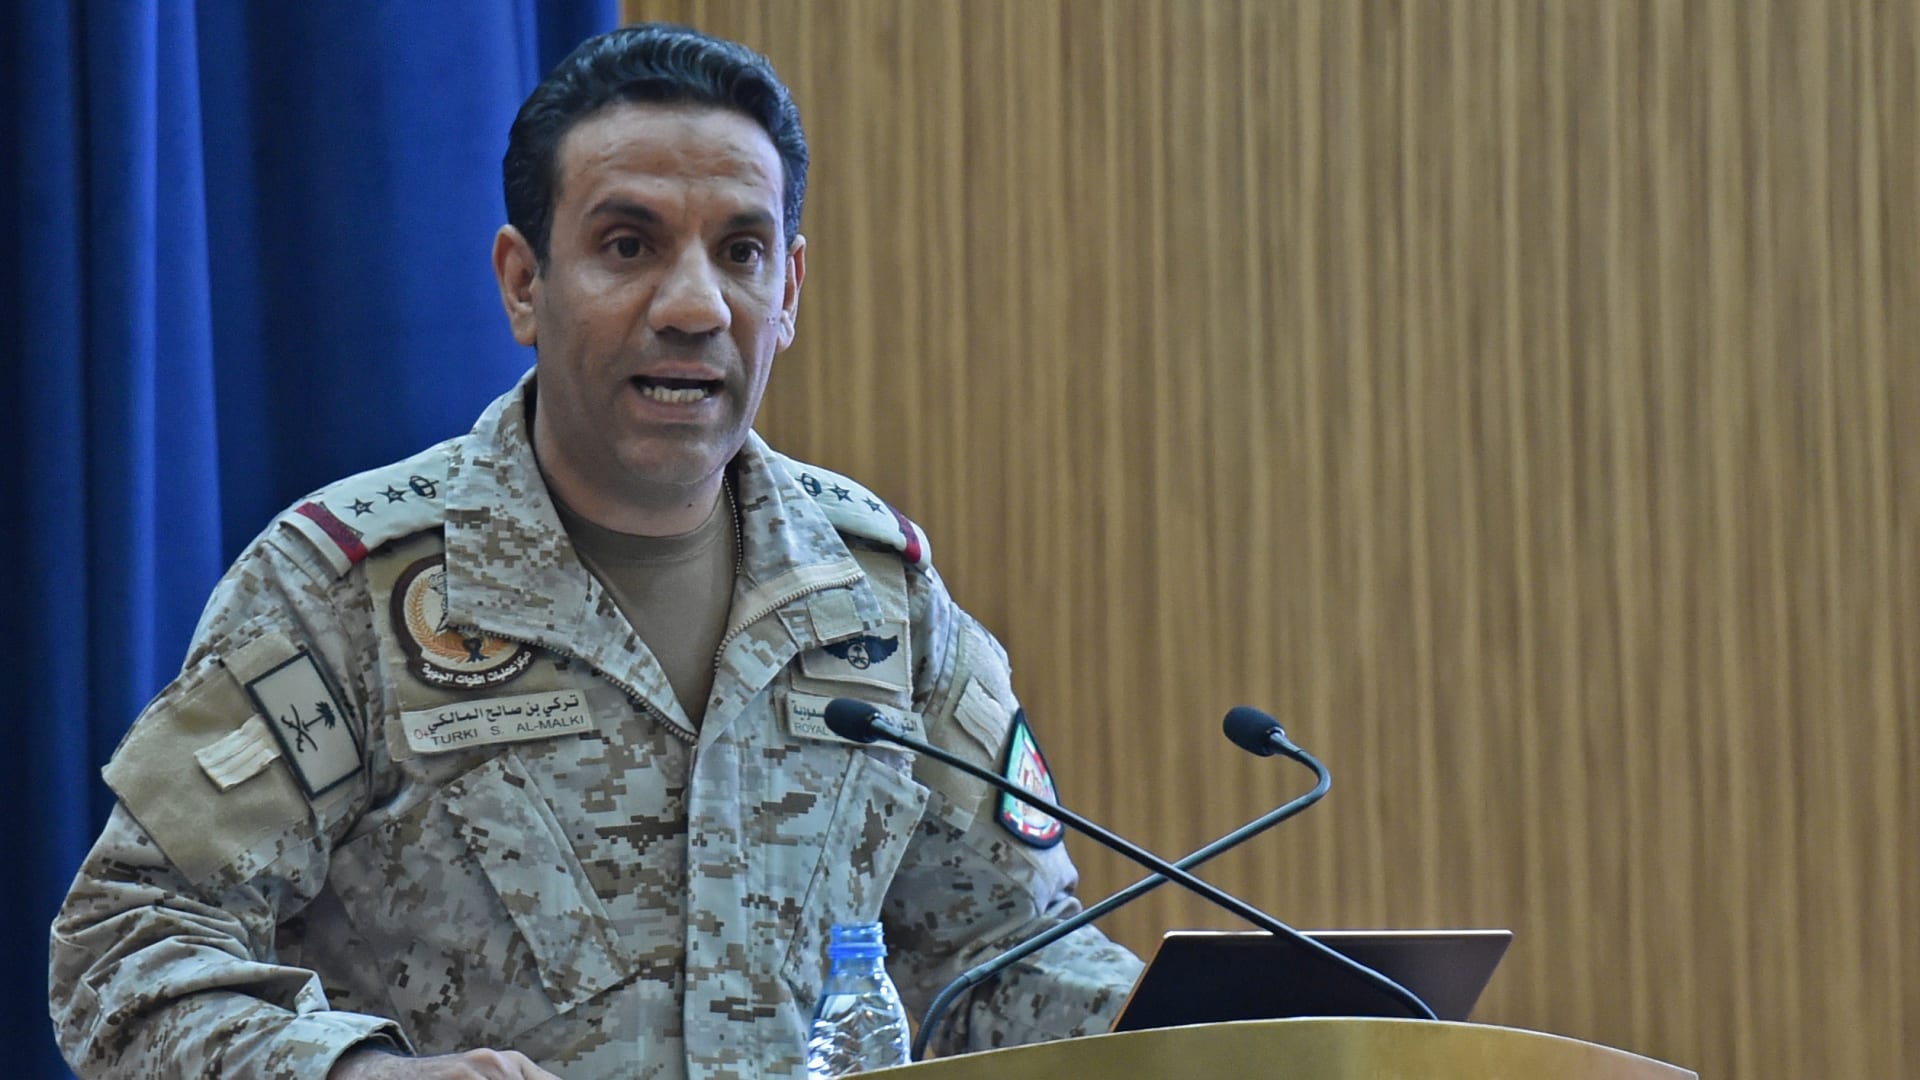  المتحدث الرسمي باسم وزارة الدفاع السعودية العميد تركي المالكي 